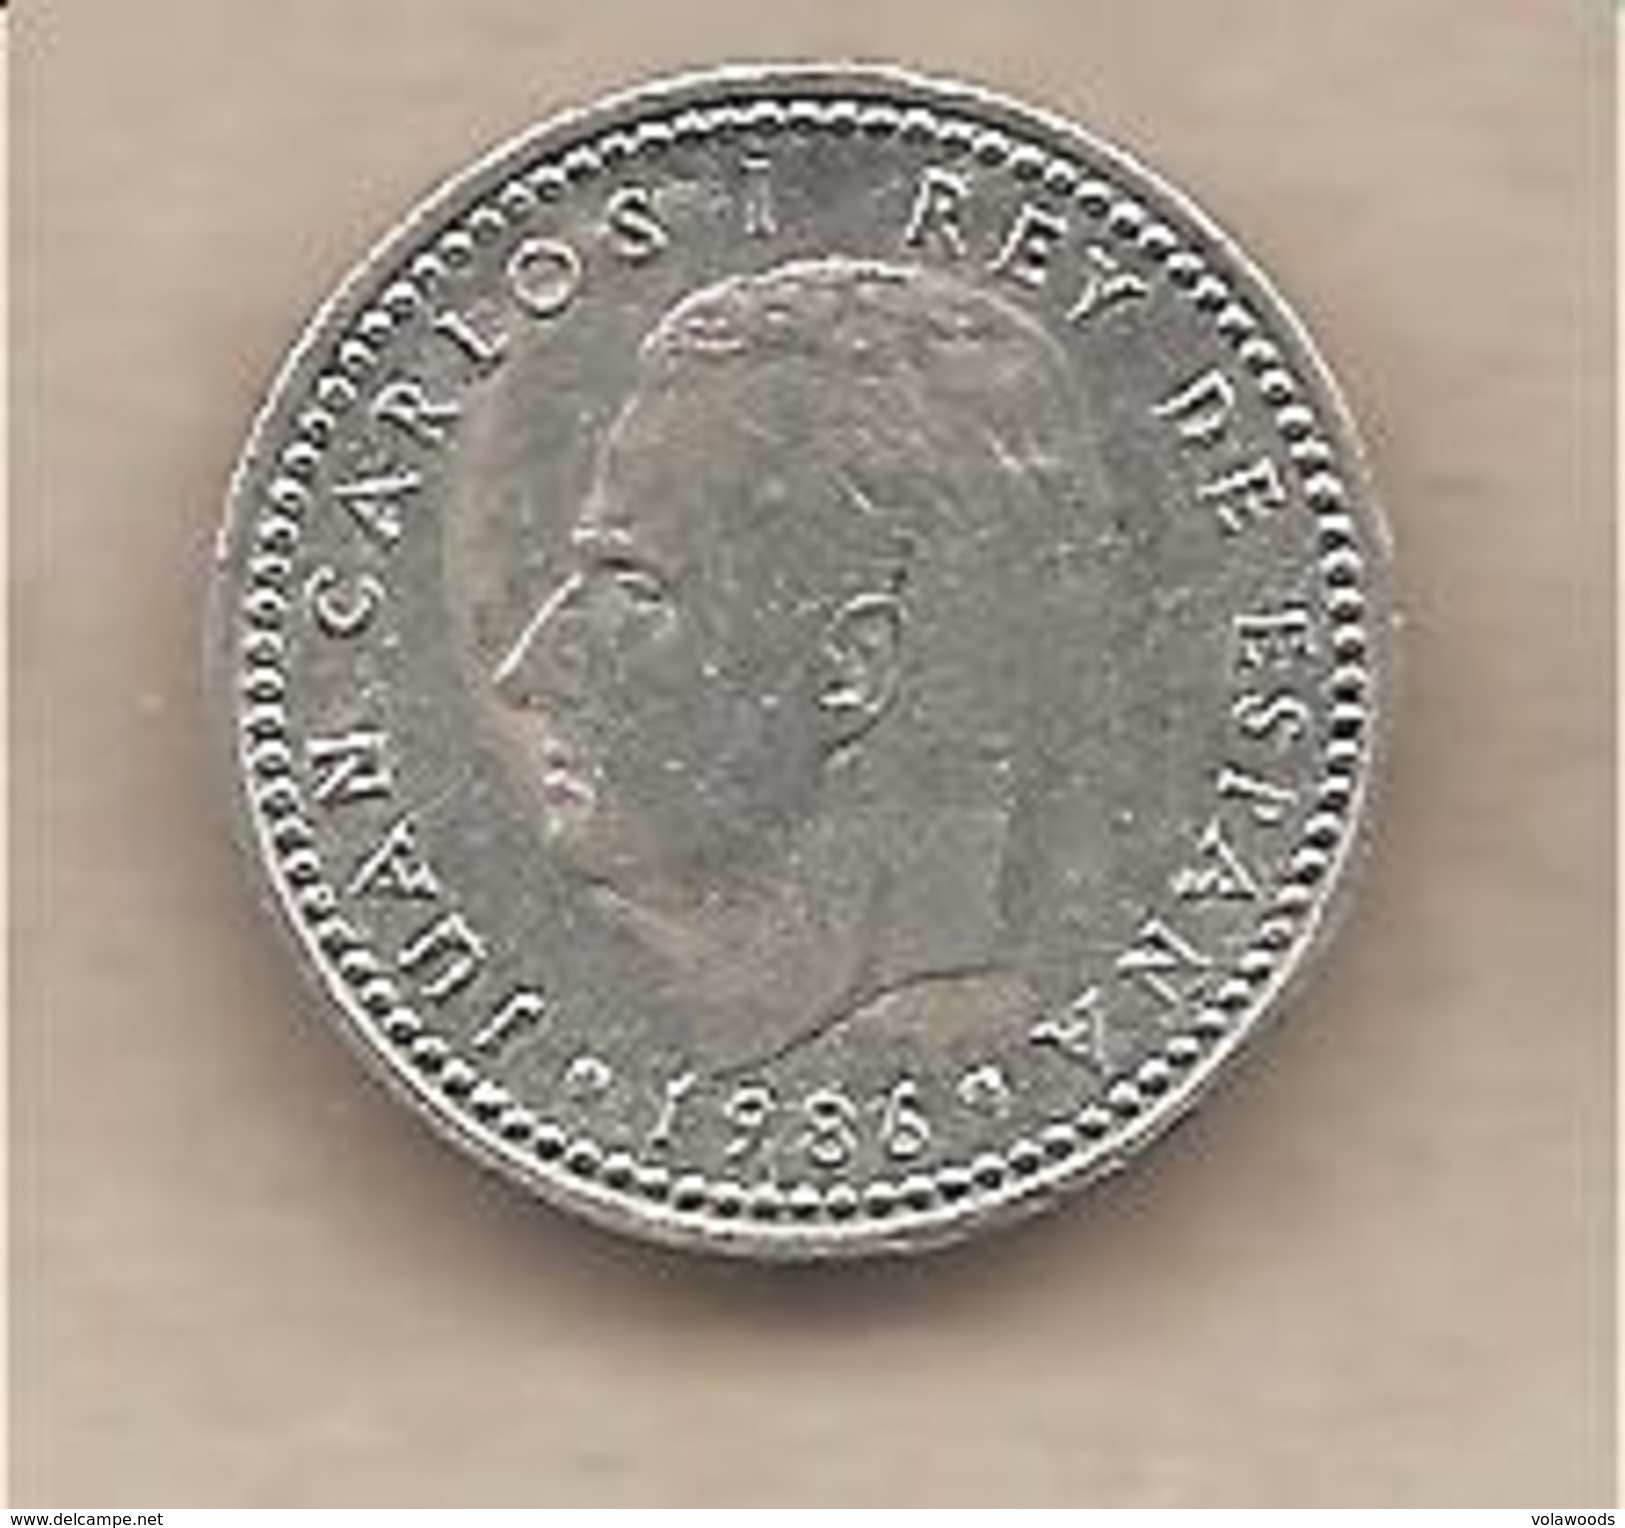 Spagna - Moneta Circolata Da 1 Peseta Km821 - 1986 - 1 Peseta